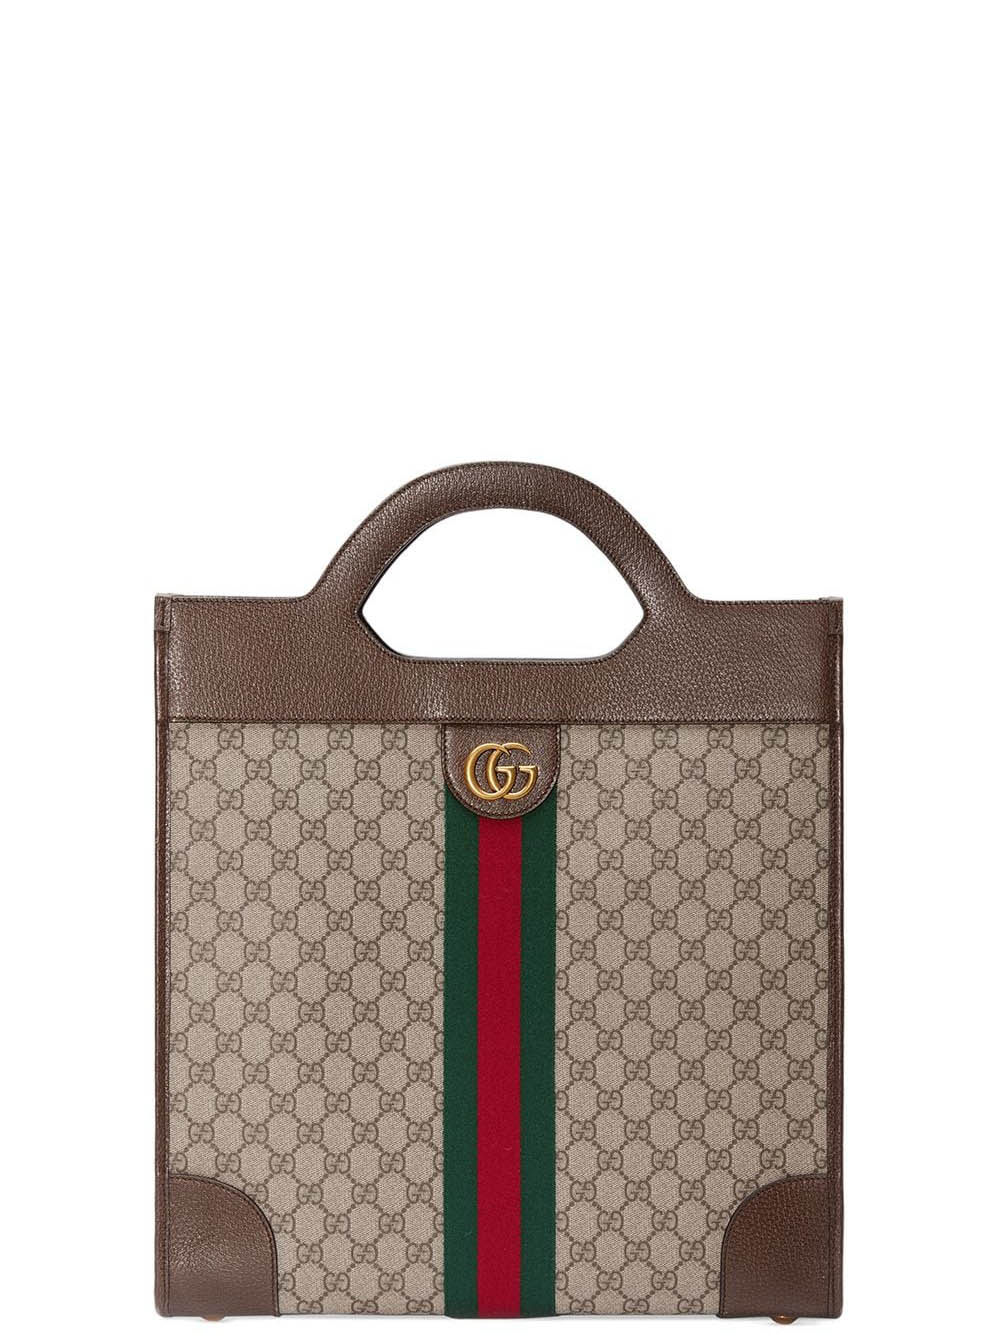 Kinh nghiệm phân biệt túi Gucci authentic nhanh chóng và chính xác nhất